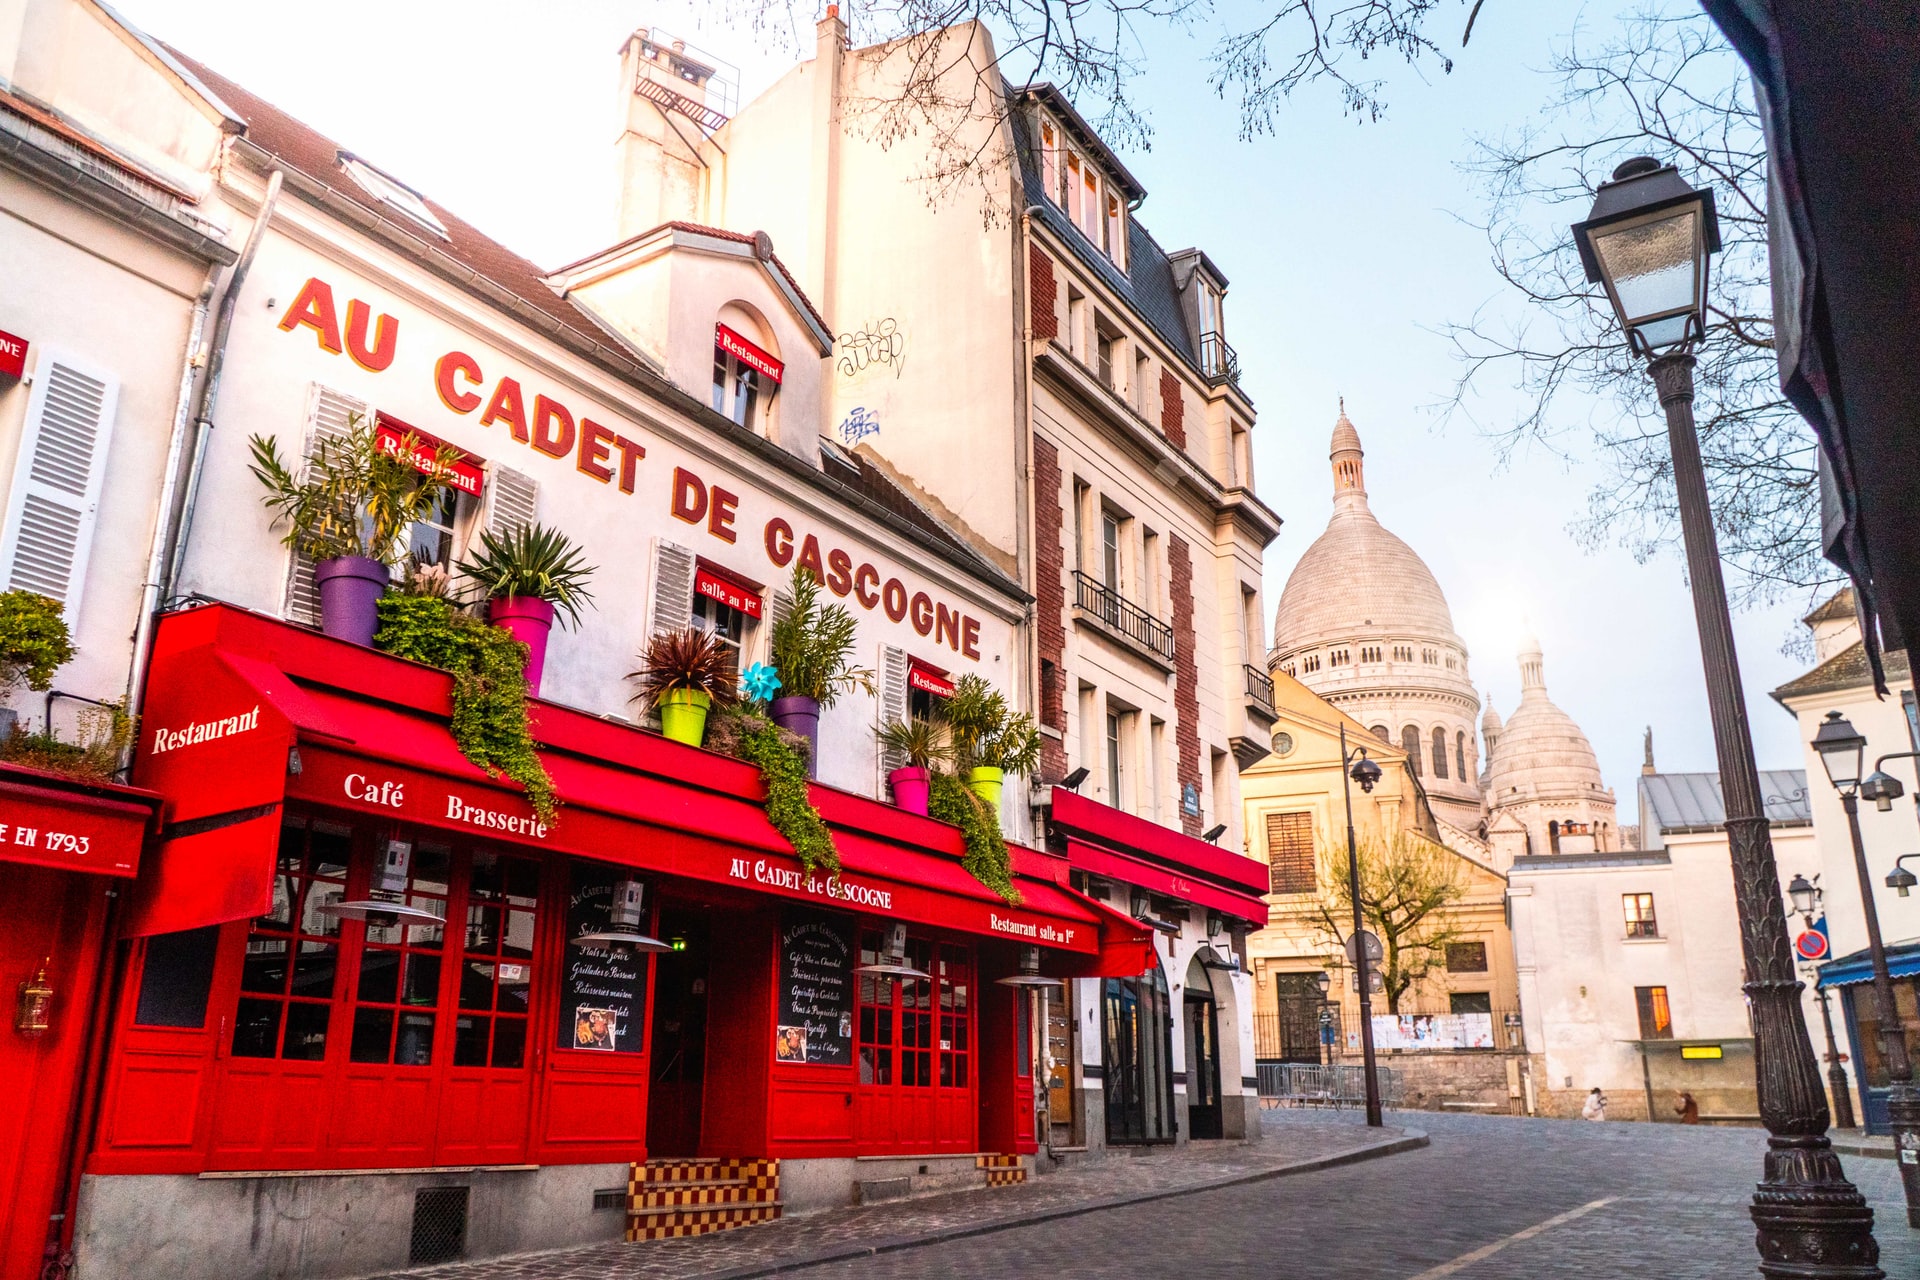 Encantador i vibrant, Montmartre ofereix impressionants vistes de París i un ambient bohemi. També hi ha una gran quantitat d'allotjaments econòmics.